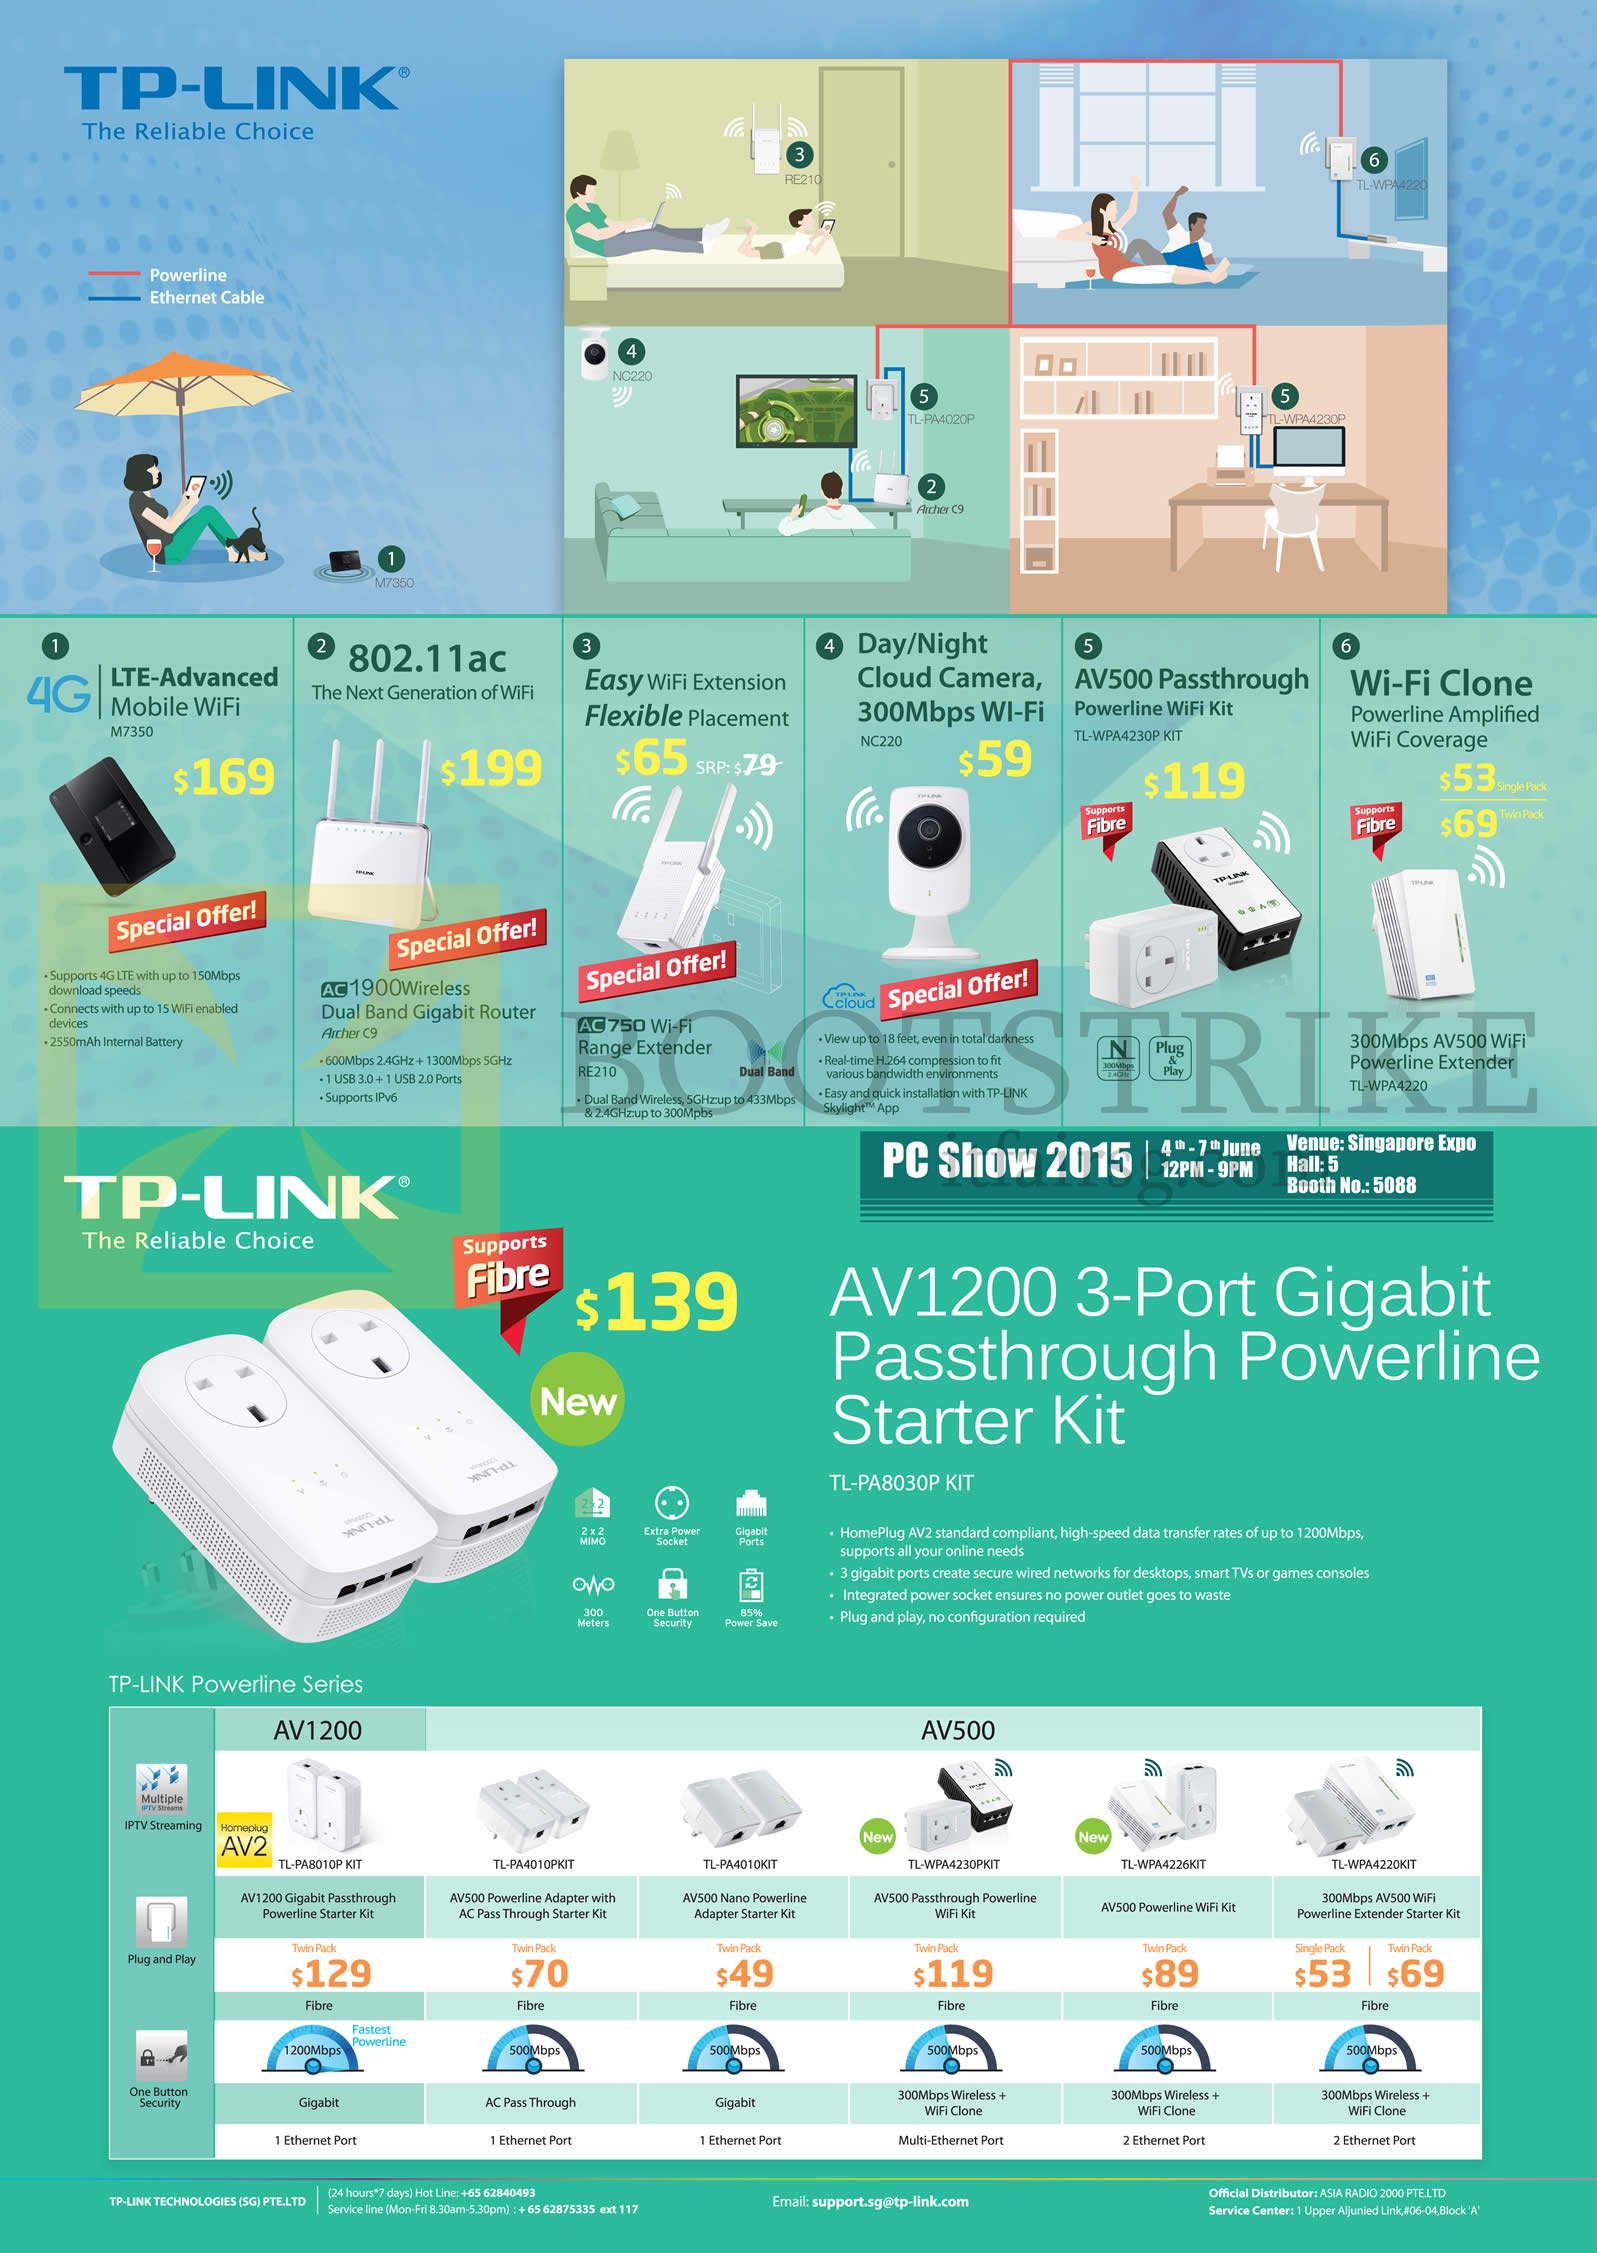 PC SHOW 2015 price list image brochure of Asia Radio TP-Link Networking AV1200 3 Port Gigabit Passthrough Powerline Starter Kit AV1200, AV500